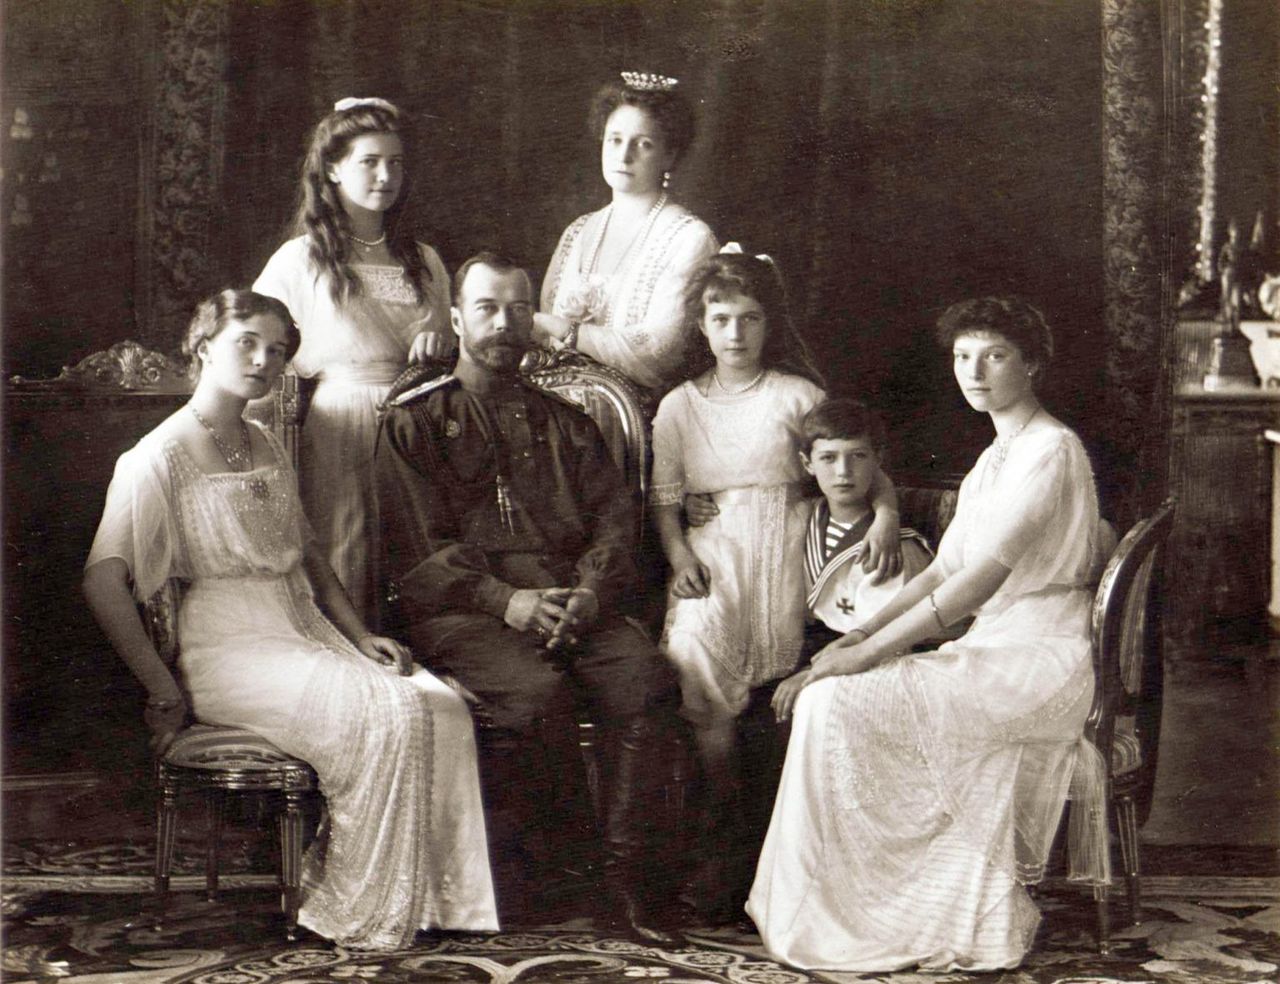 Carska rodzina w 1913 roku